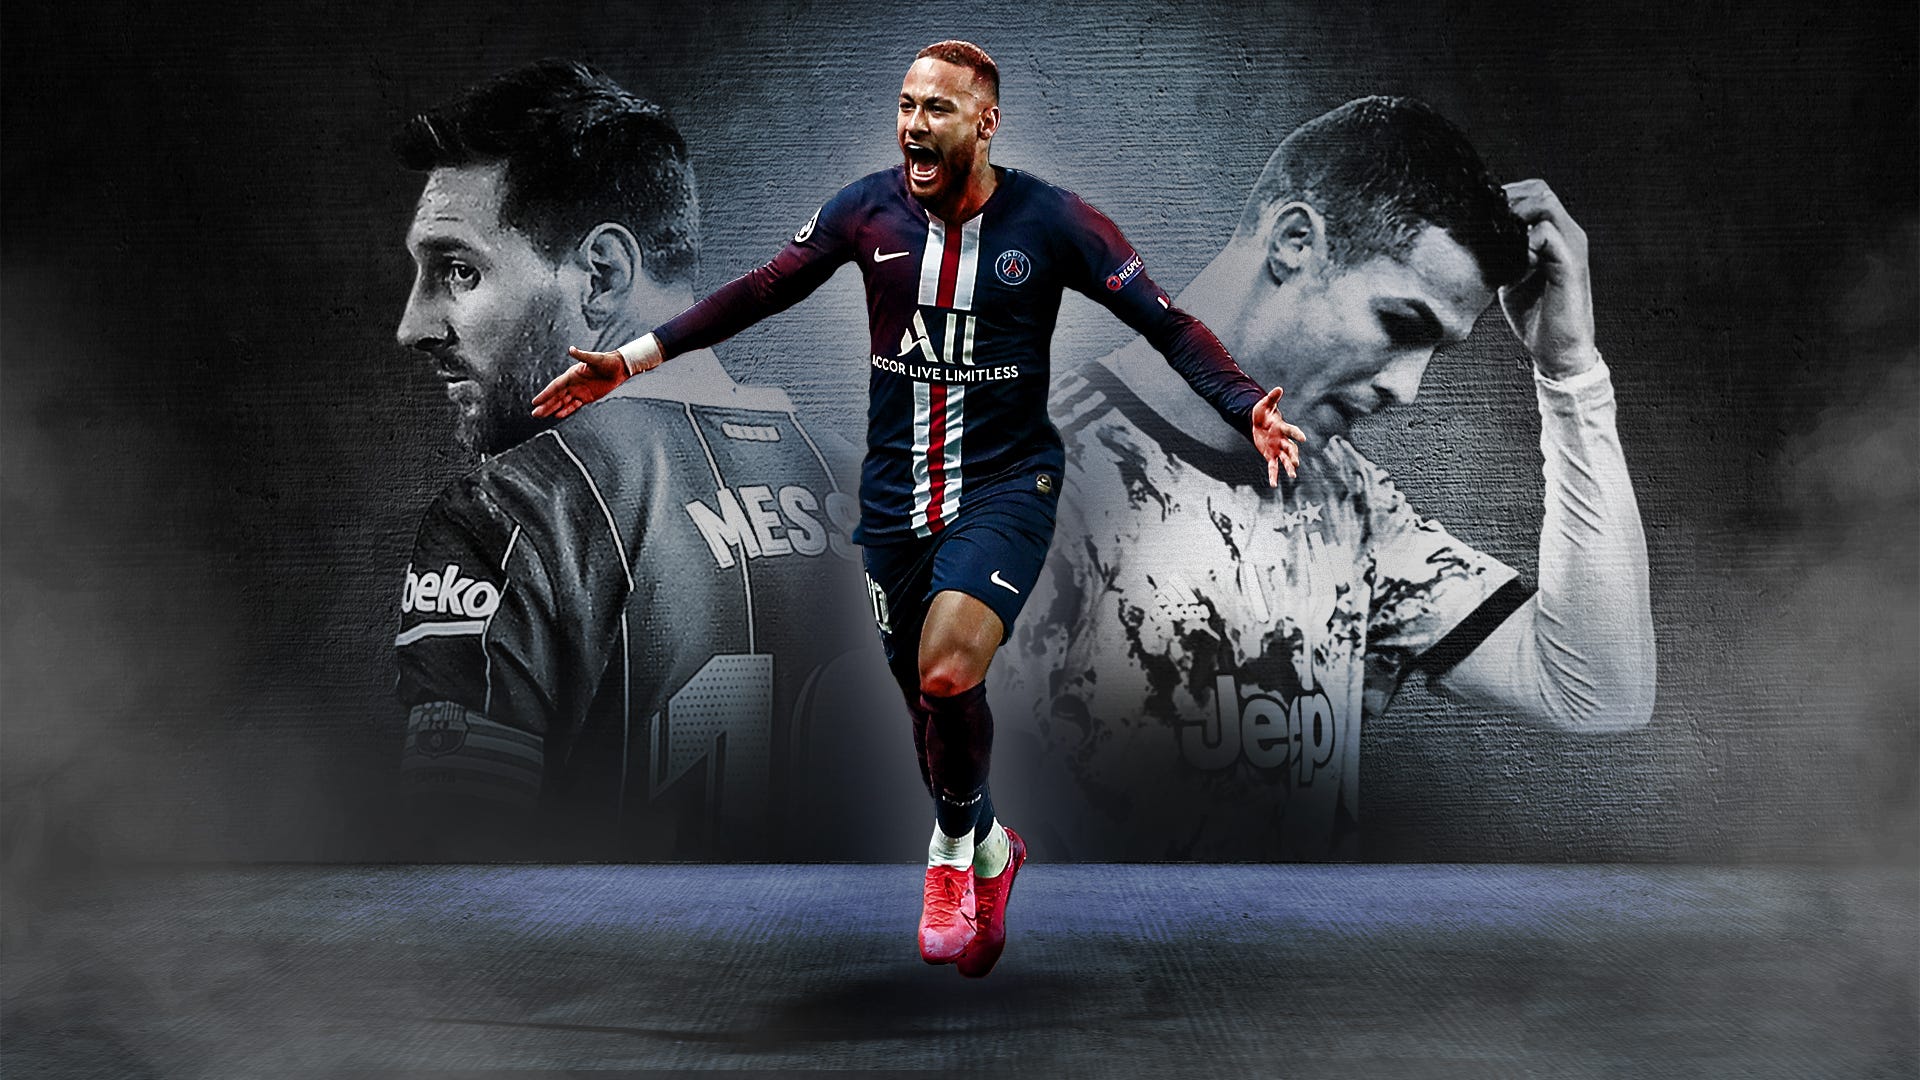 Sự kết hợp hoàn hảo của Neymar và Messi nay đã góp mặt trên hình nền điện thoại của bạn! Bạn sẽ bị thu hút ngay trong lần đầu xem bởi sức mạnh và tài năng của hai ngôi sao hàng đầu này.